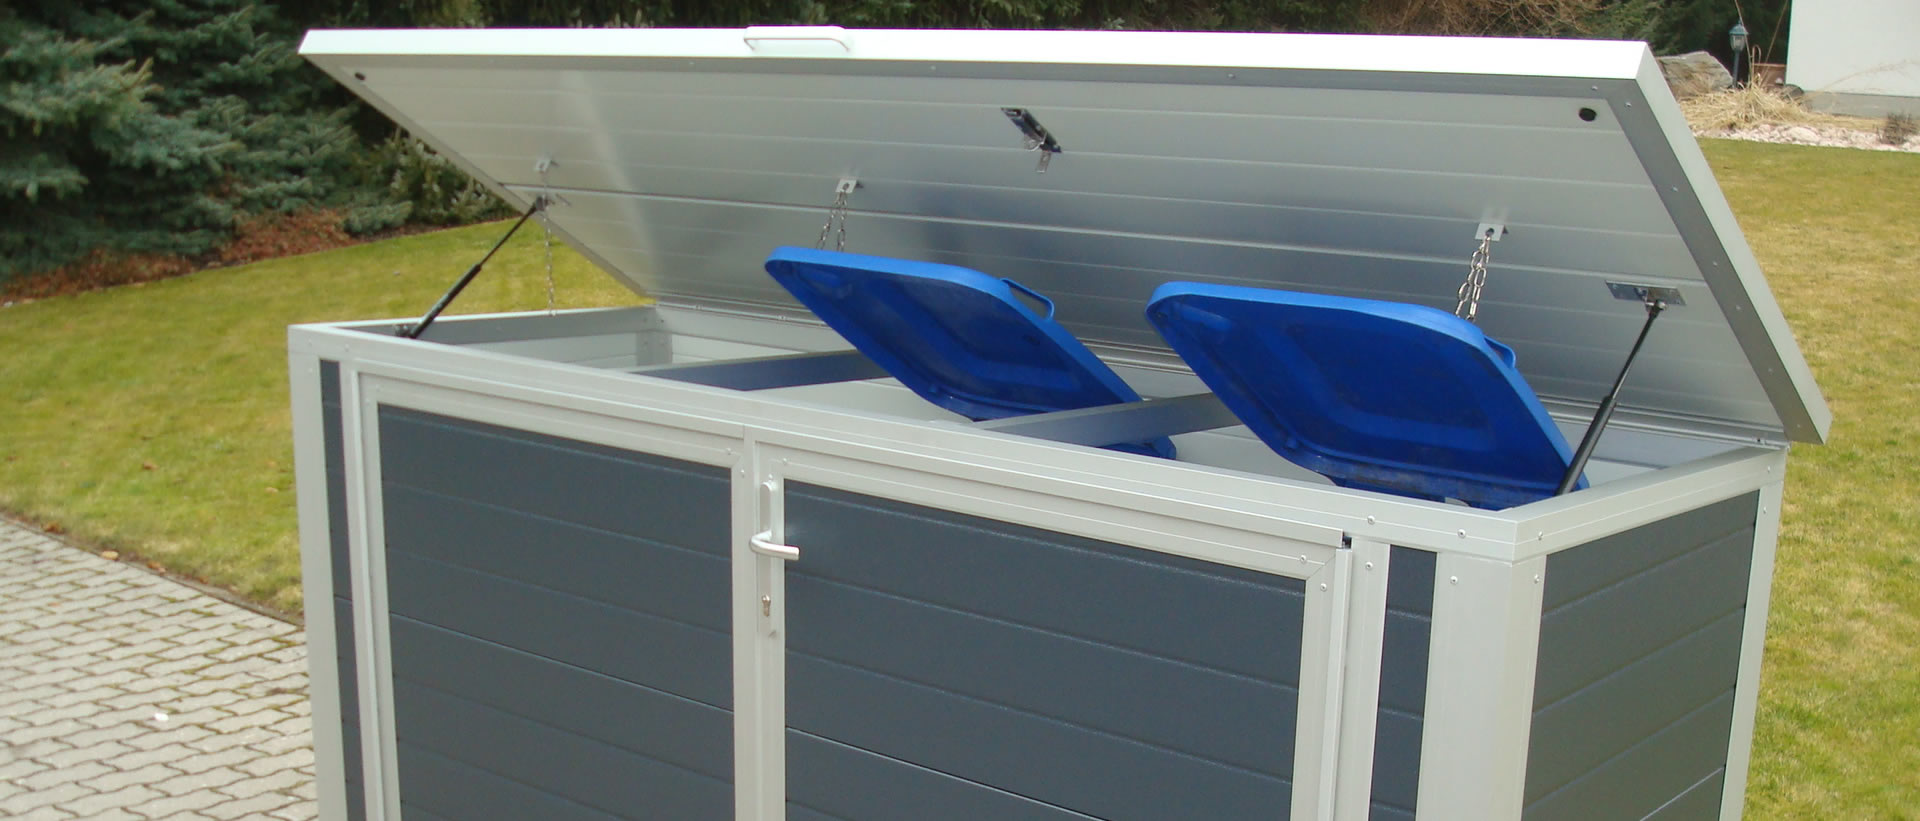 Containerbox für Abfalltonnen individuell konfigurieren für bis zu 4 Mülltonnen